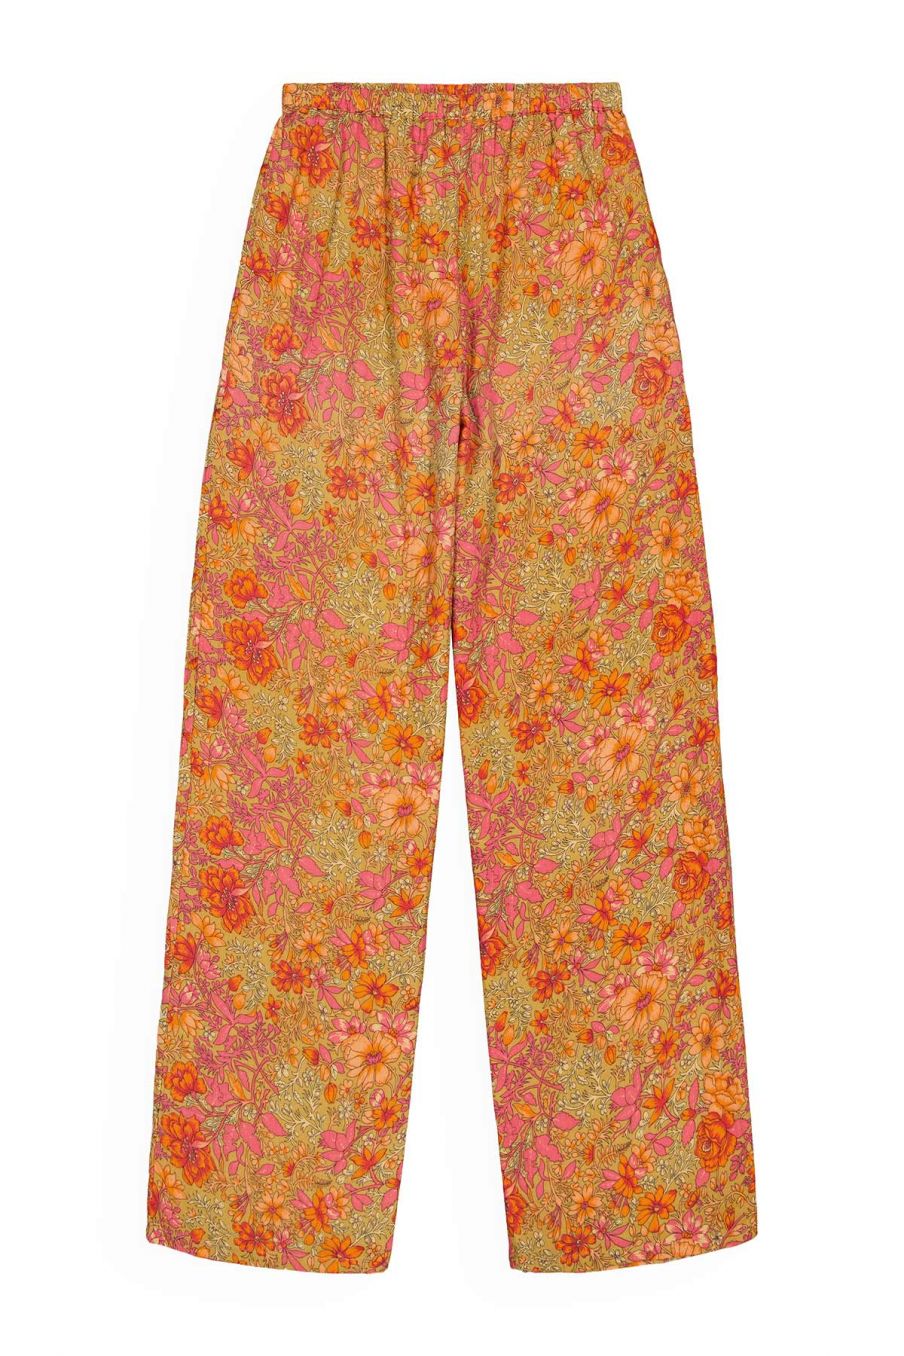 femme-pyjama-melicia-khaki-multi-flowers